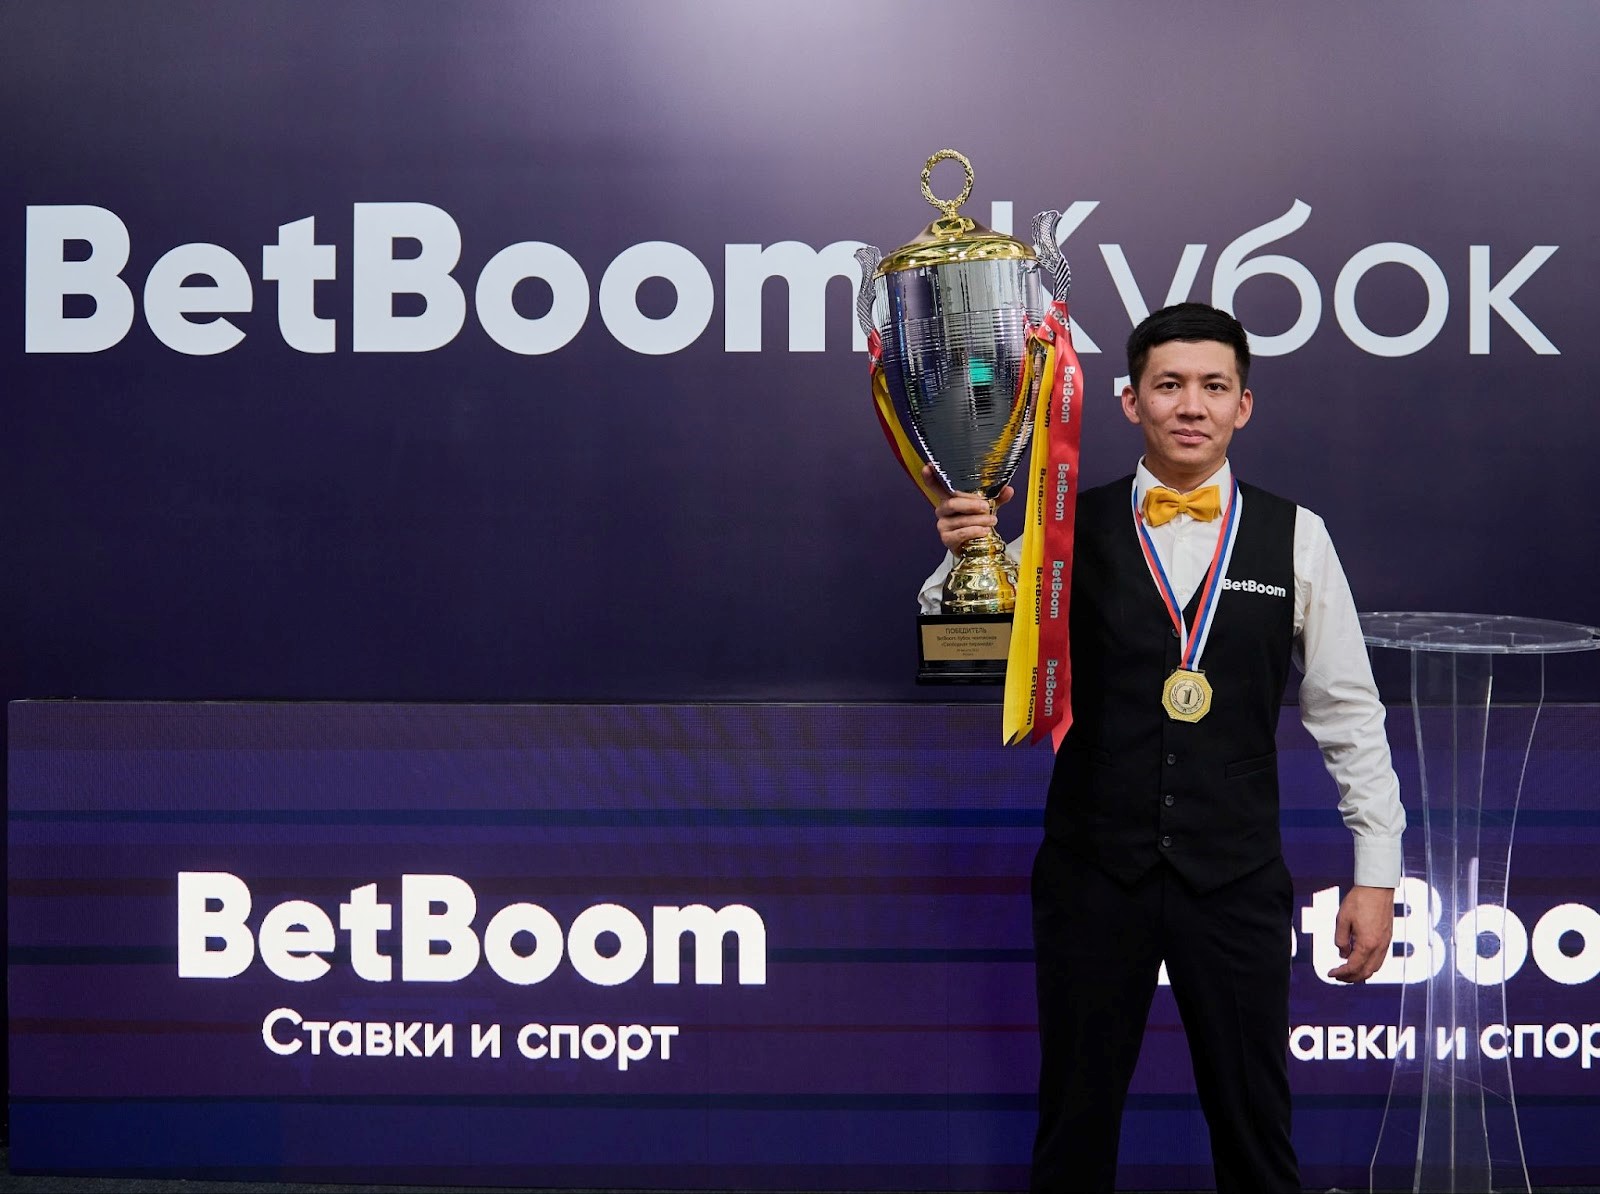 BetBoom в очередной раз станет спонсором международного турнира по бильярду